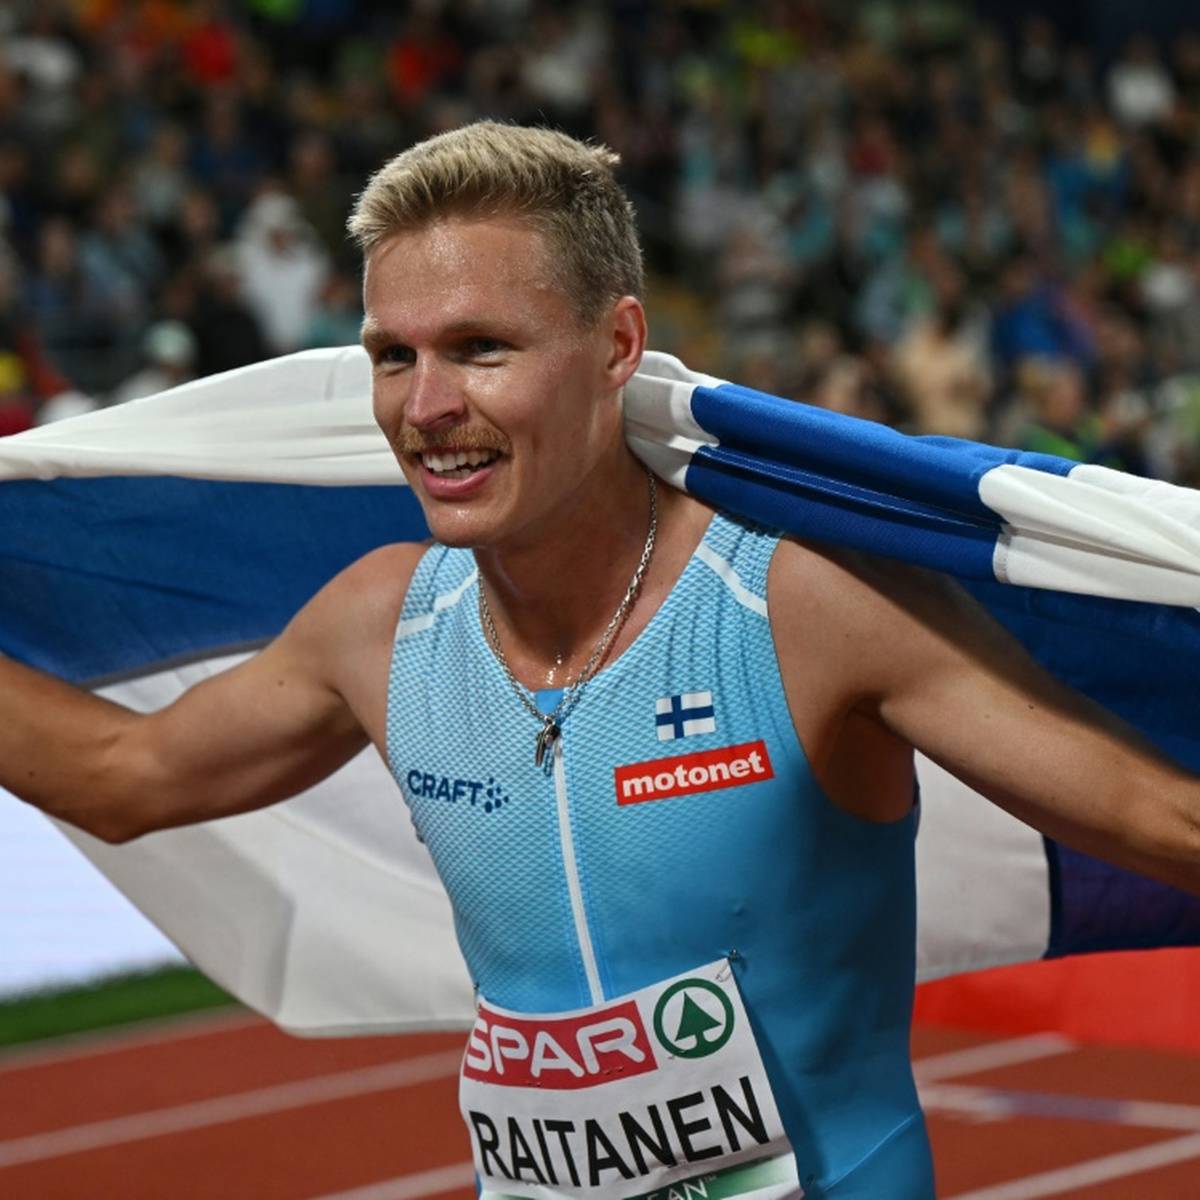 Der Finne Topi Raitanen hat EM-Gold über 3000 m Hindernis gewonnen und damit die französische Siegesserie auf europäischer Ebene beendet.